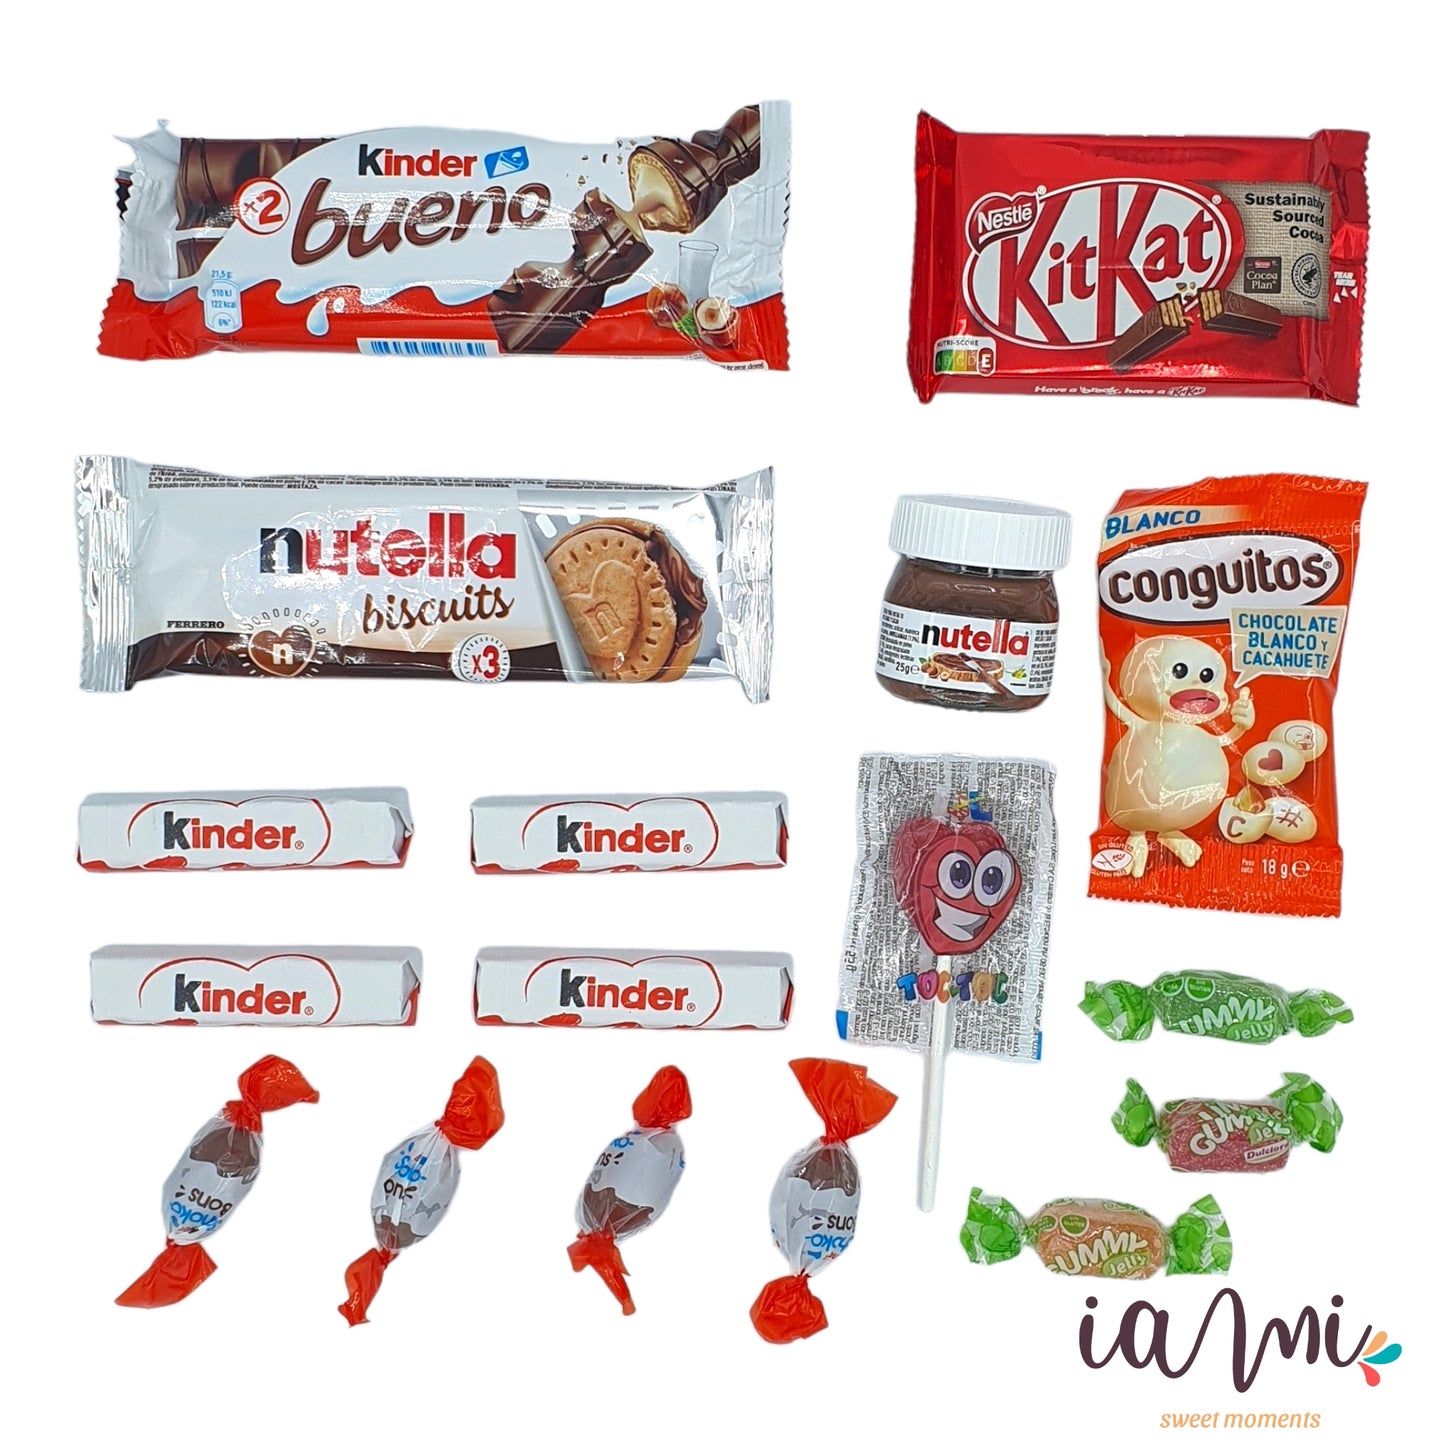 Super Bandeja Chocolates Kinder - Nutella - Conguitos. +15 Unid. El Regalo Ideal para Comuniones, Bodas, Bautizos, Cumpleaños.